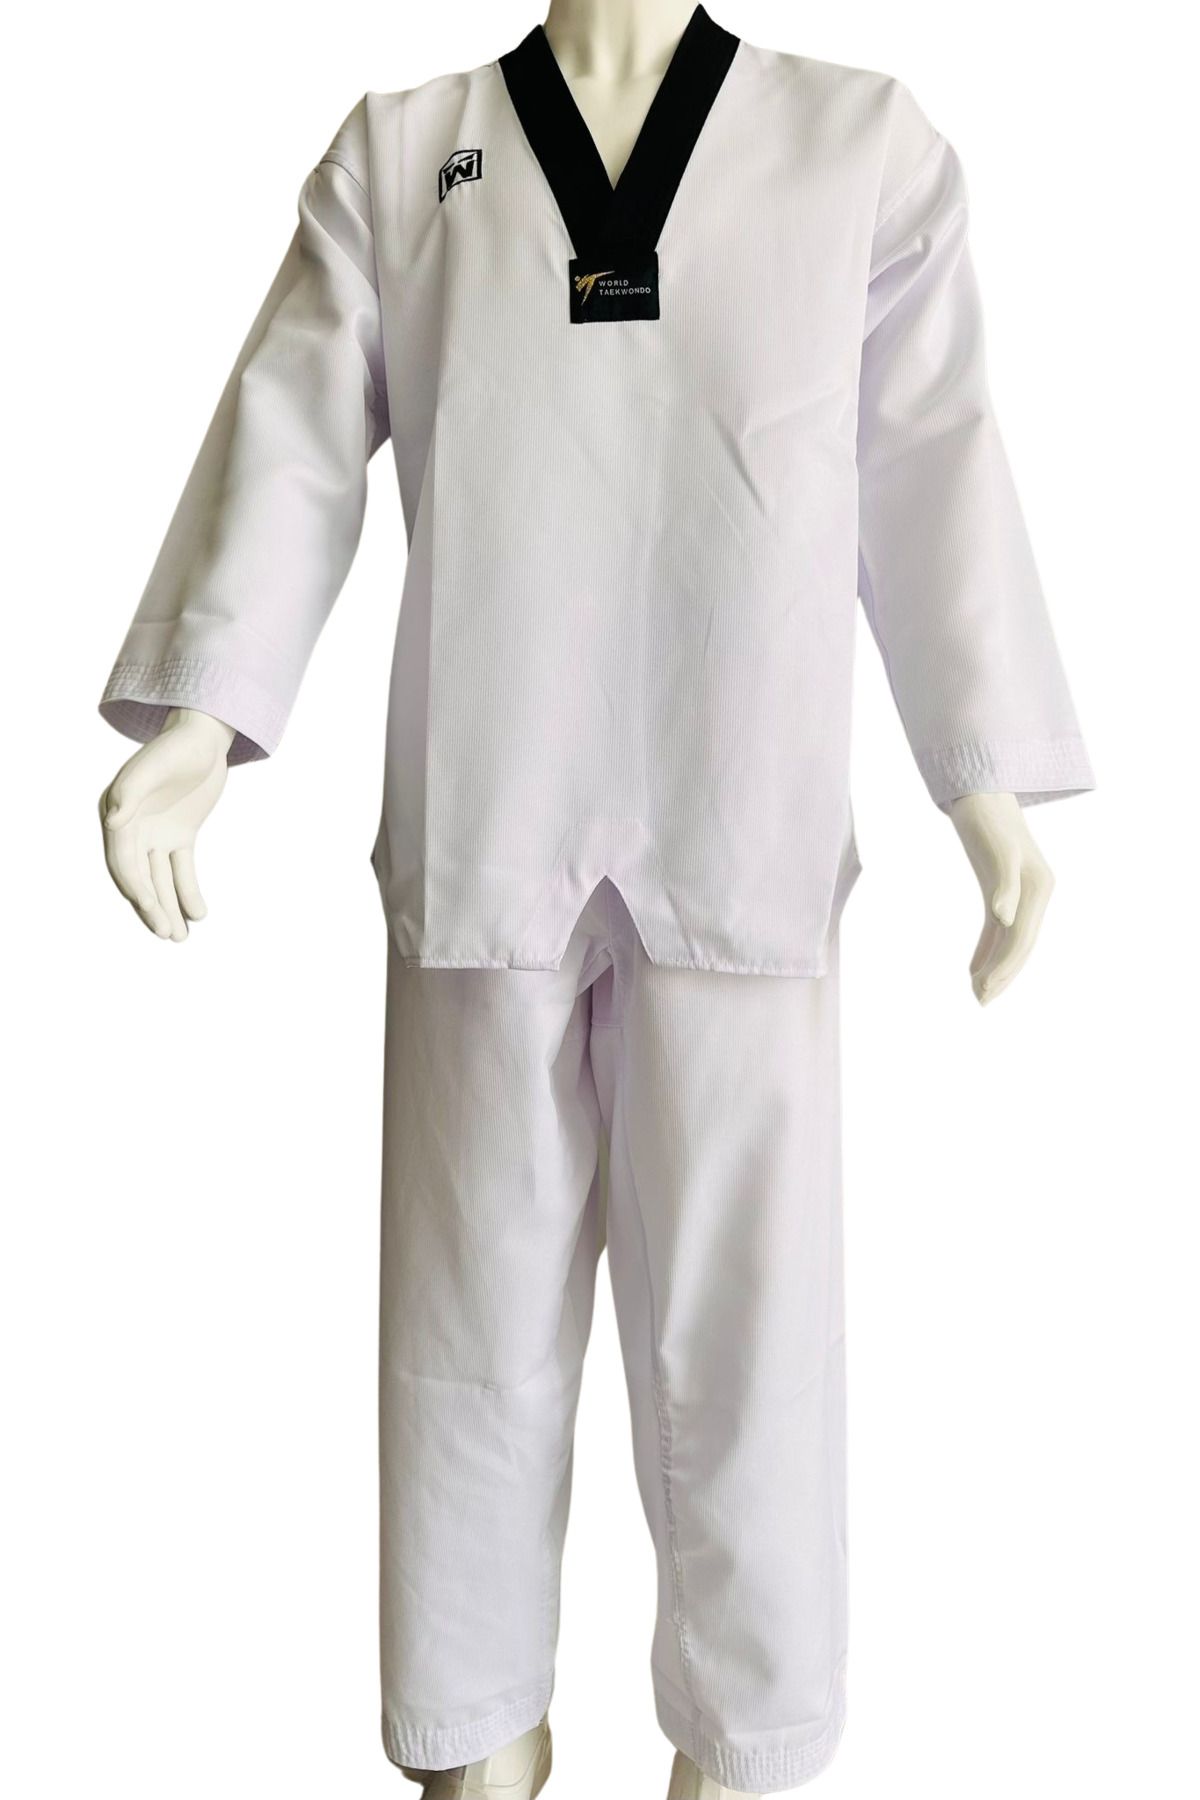 whiteface Taekwondo Elbisesi Siyah Yaka Fitilli